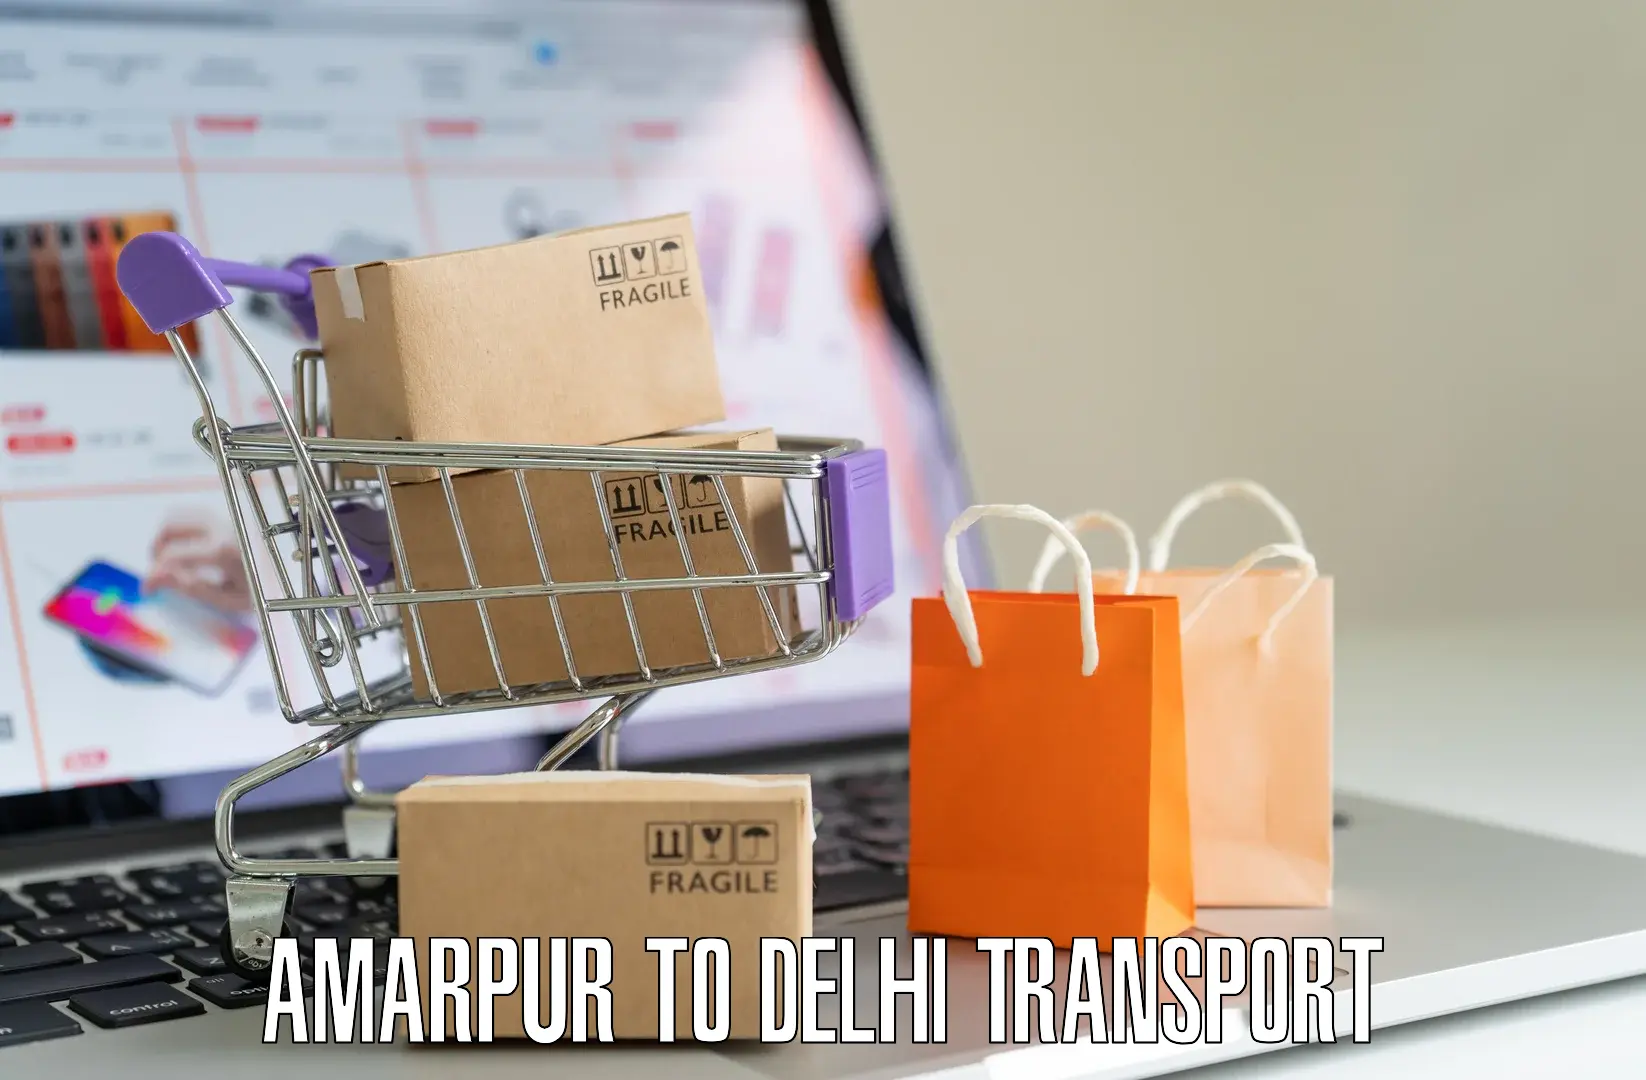 Container transport service Amarpur to Sarojini Nagar